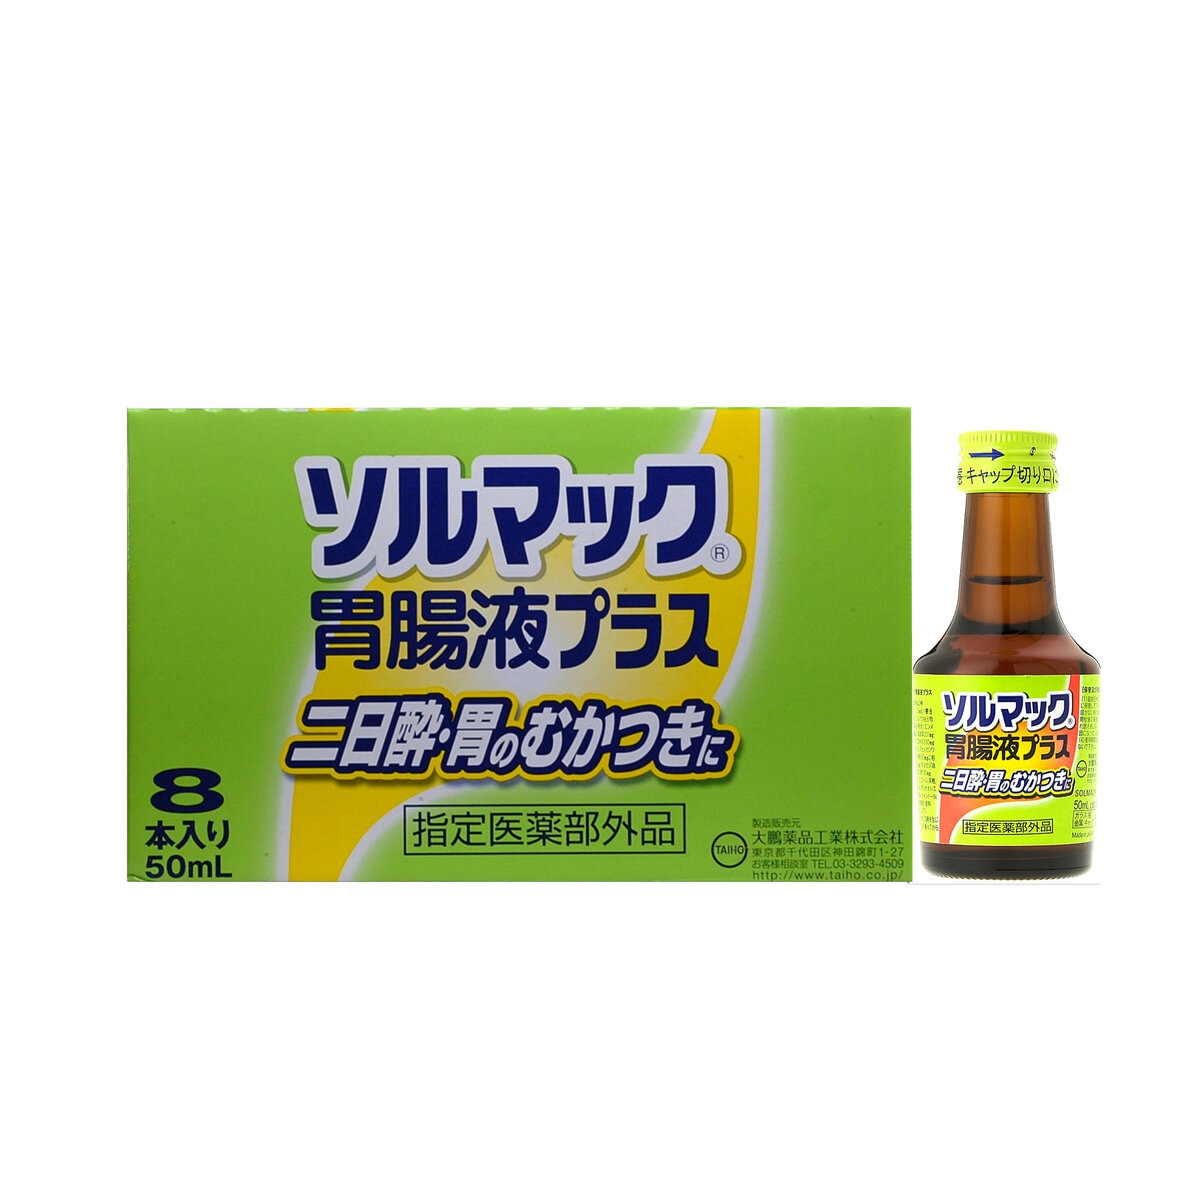 ソルマック胃腸液プラス 8本 | Costco Japan